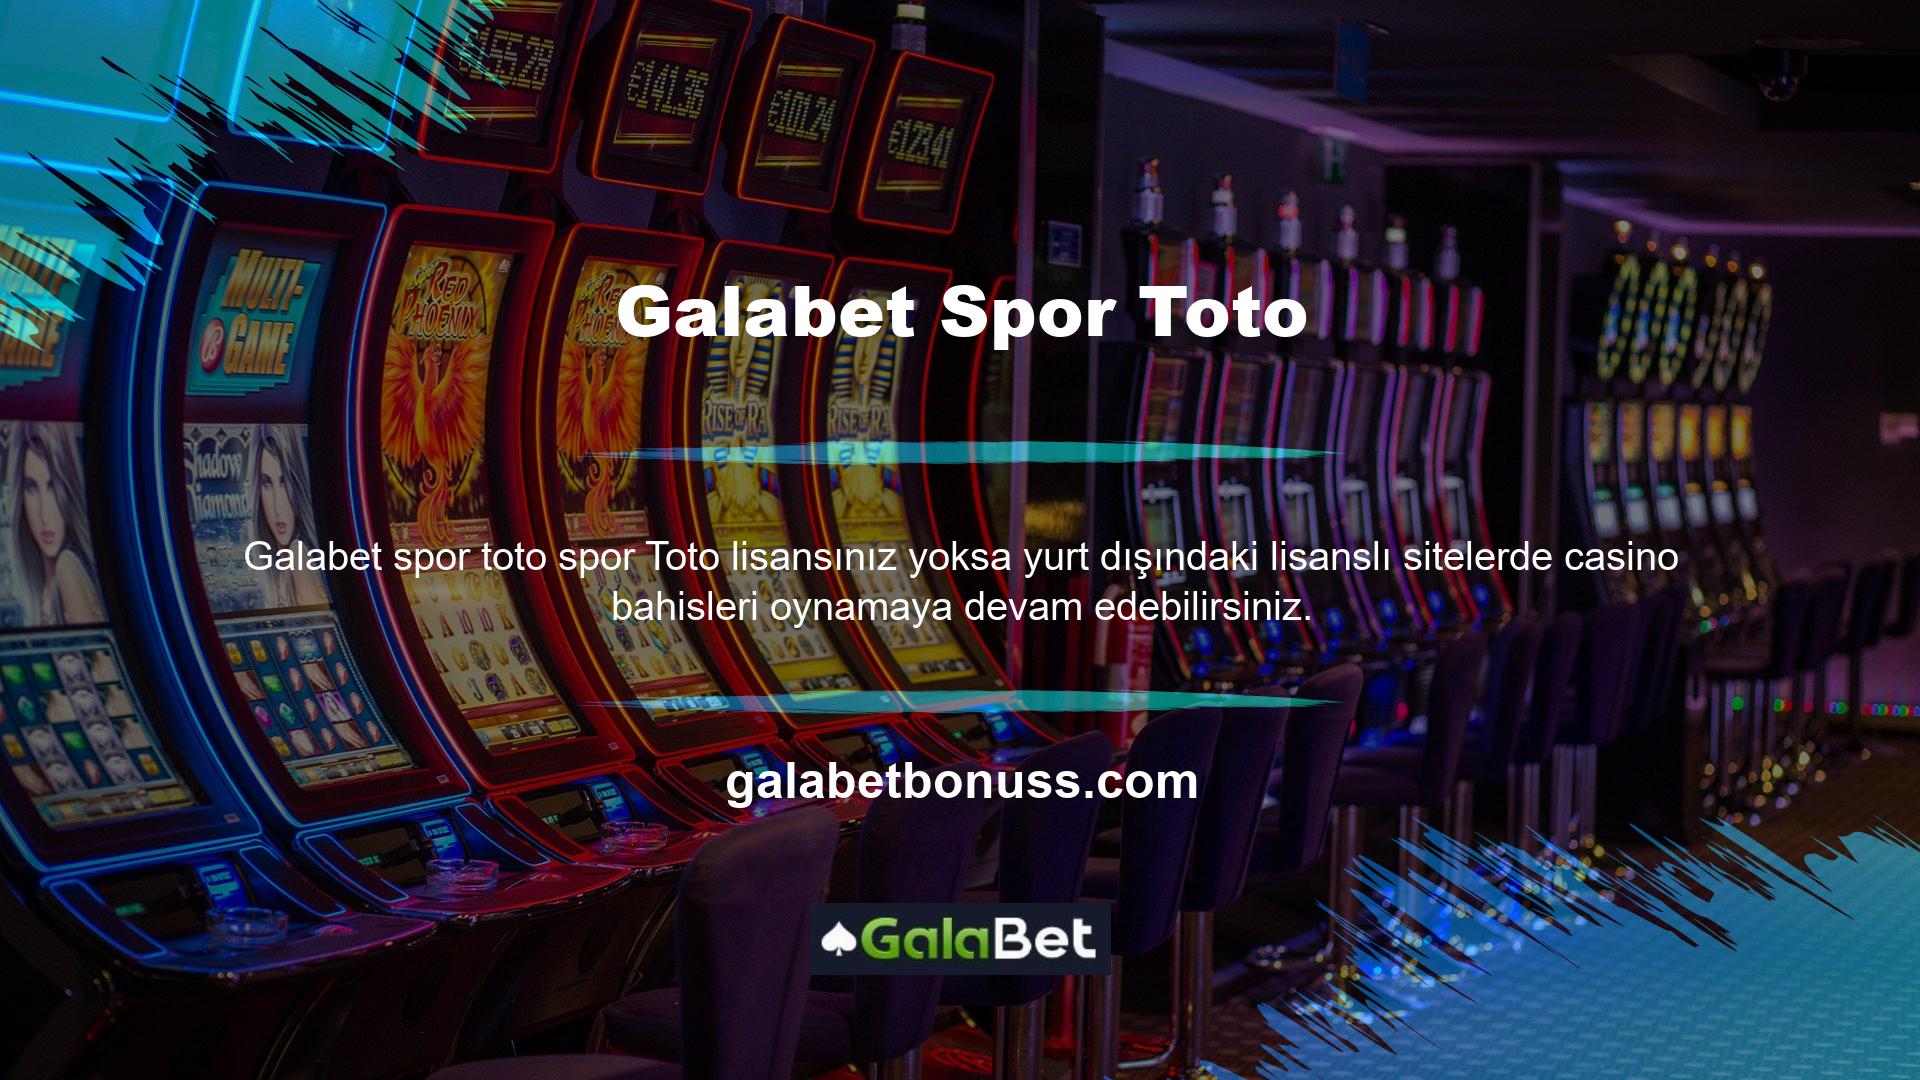 Galabet canlı spor bahis sitesi, yeni adreslerinde casino oynamak isteyen müşteriler için uygun video slotları, klasik slotlar ve 3D slotları içermektedir